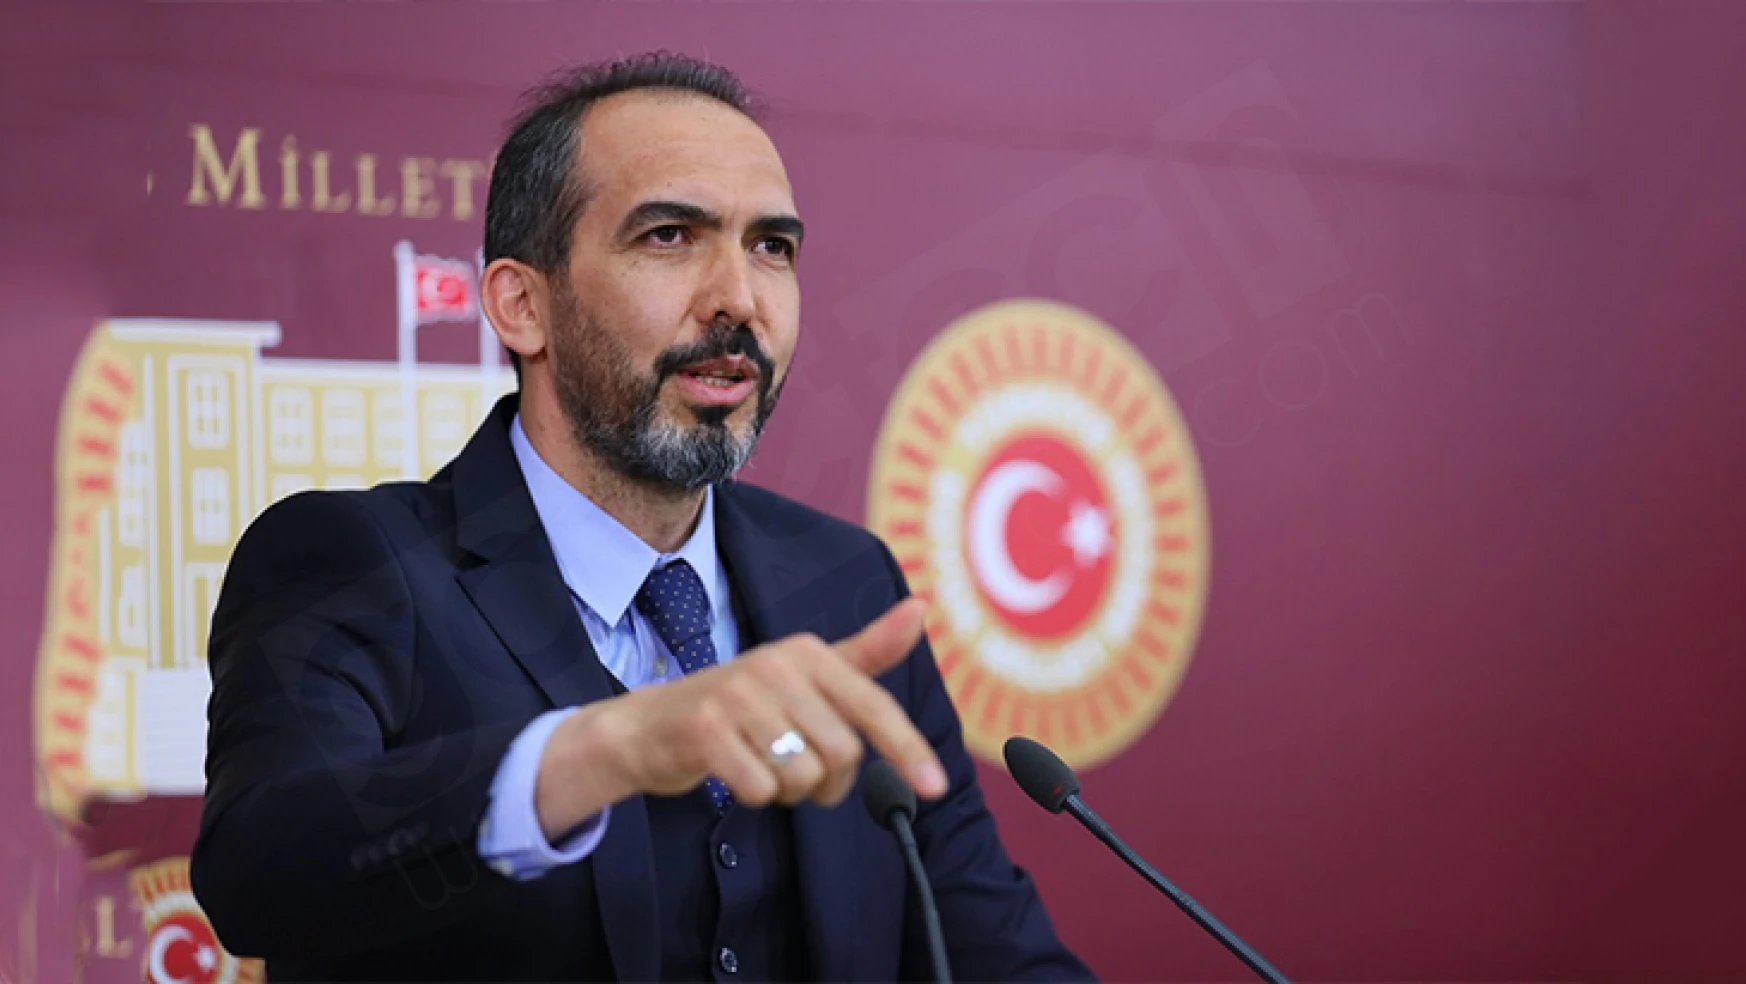 Milletvekili Özdemir, meclis kürsüsünden sert konuştu: Oraya gel de konuş